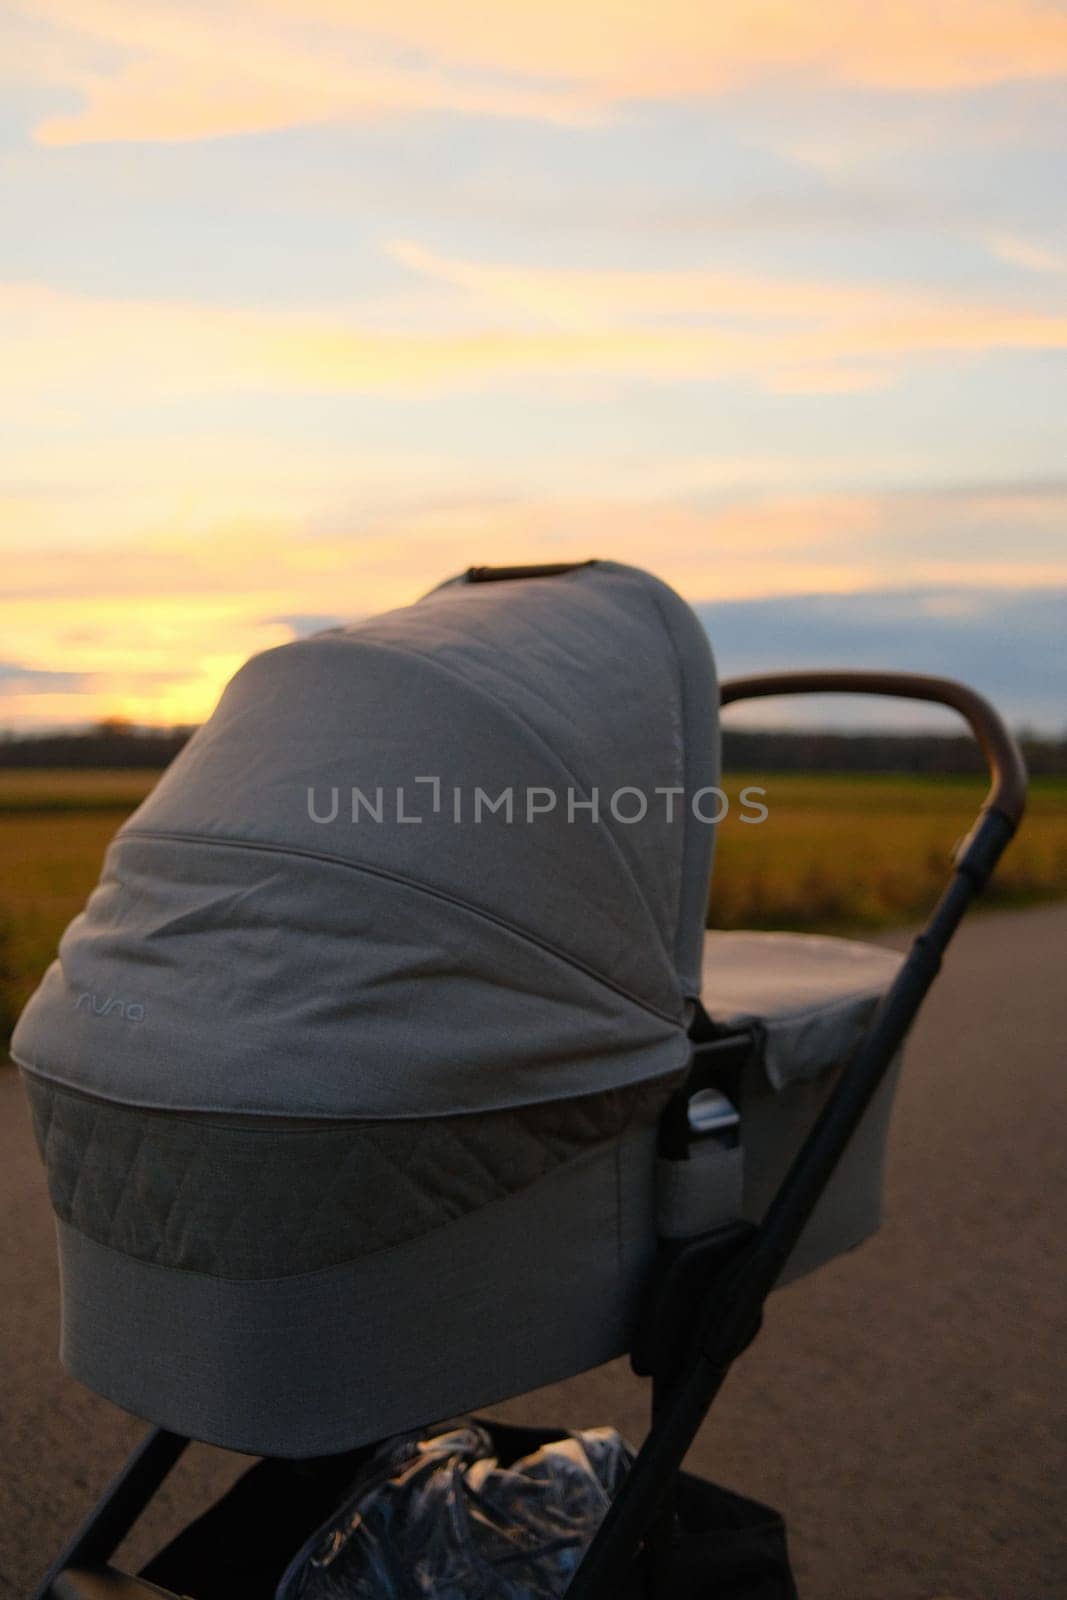 Nuna brand baby stroller near a field against sunset sky